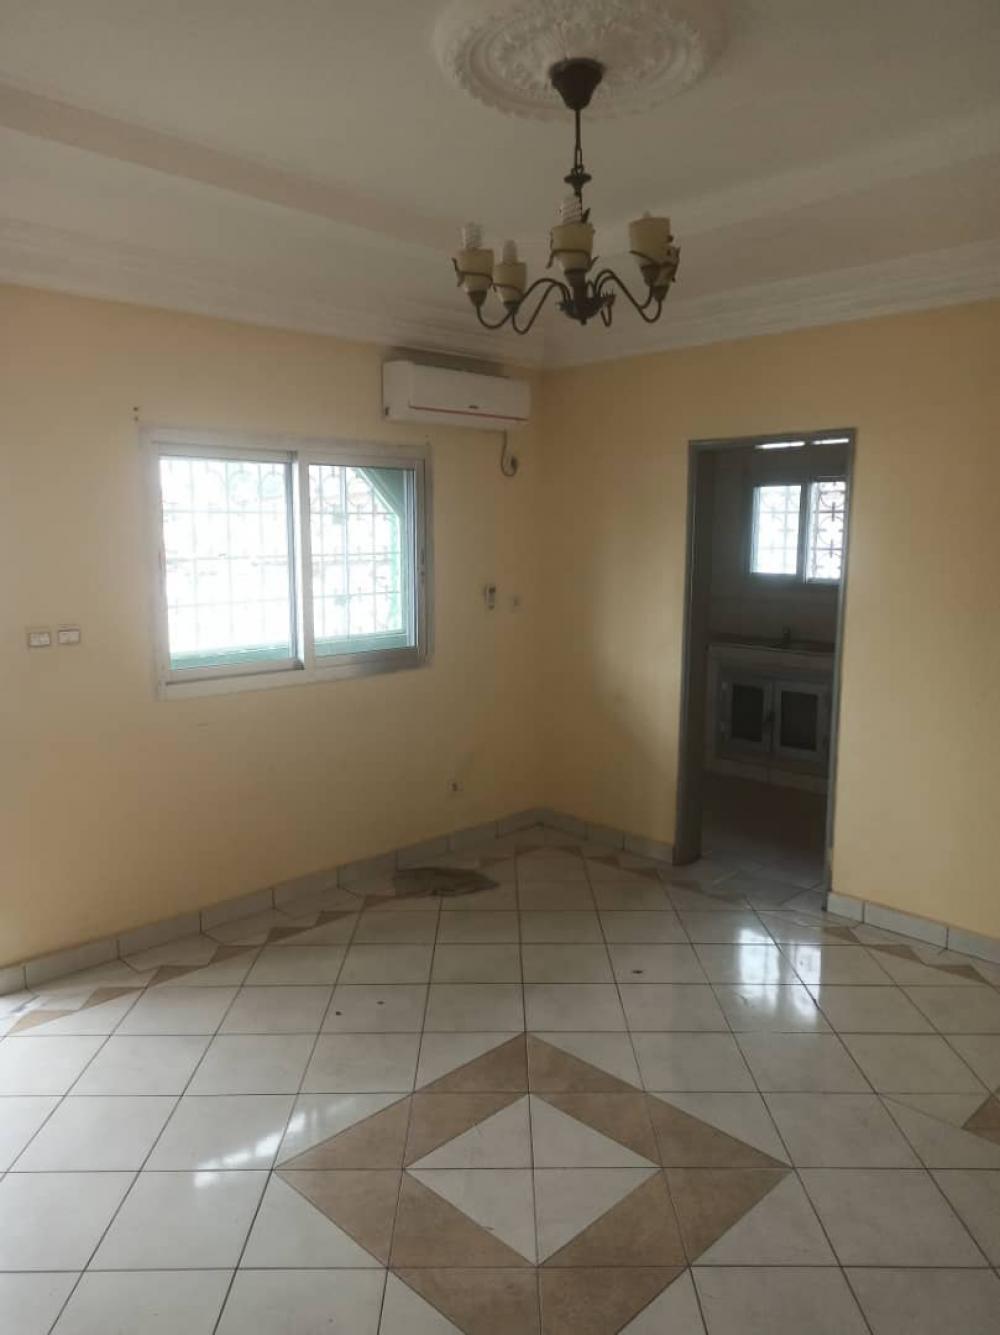 Appartement 2 chambres à louer à Libreville, Lalala à droite. Prix: 250 000 FcfaPhoto Annonce Gabonhome 